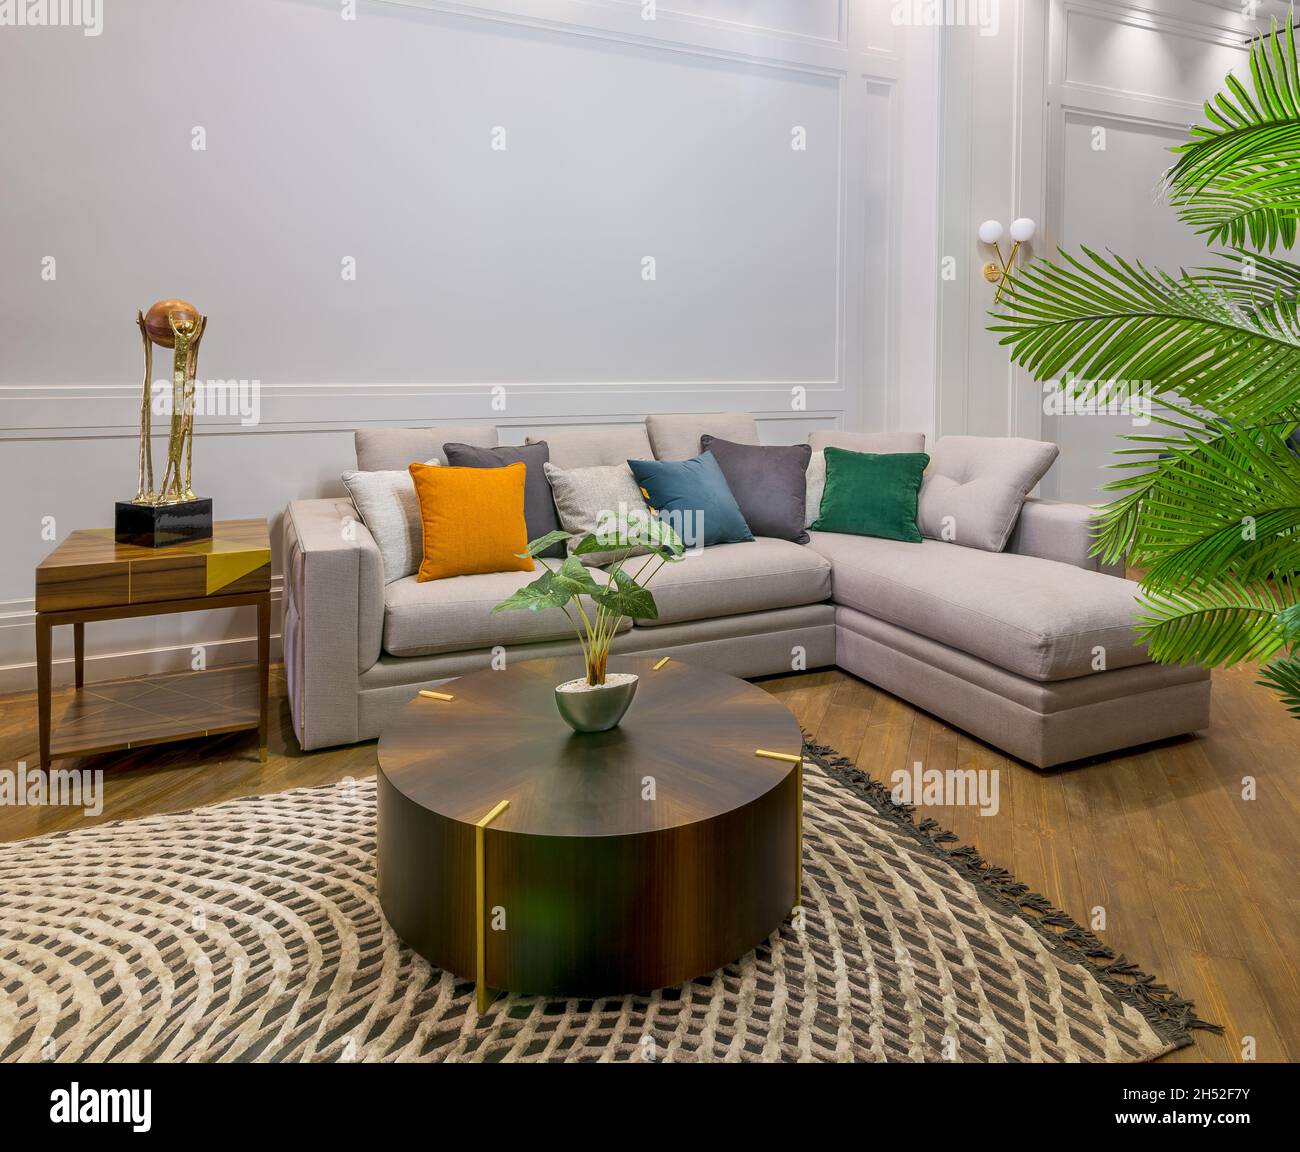 Comodo divano grigio con cuscini colorati posto vicino al tavolo su tappeto  in spaziosa camera moderna con poltrone e piante in vaso verde Foto stock -  Alamy